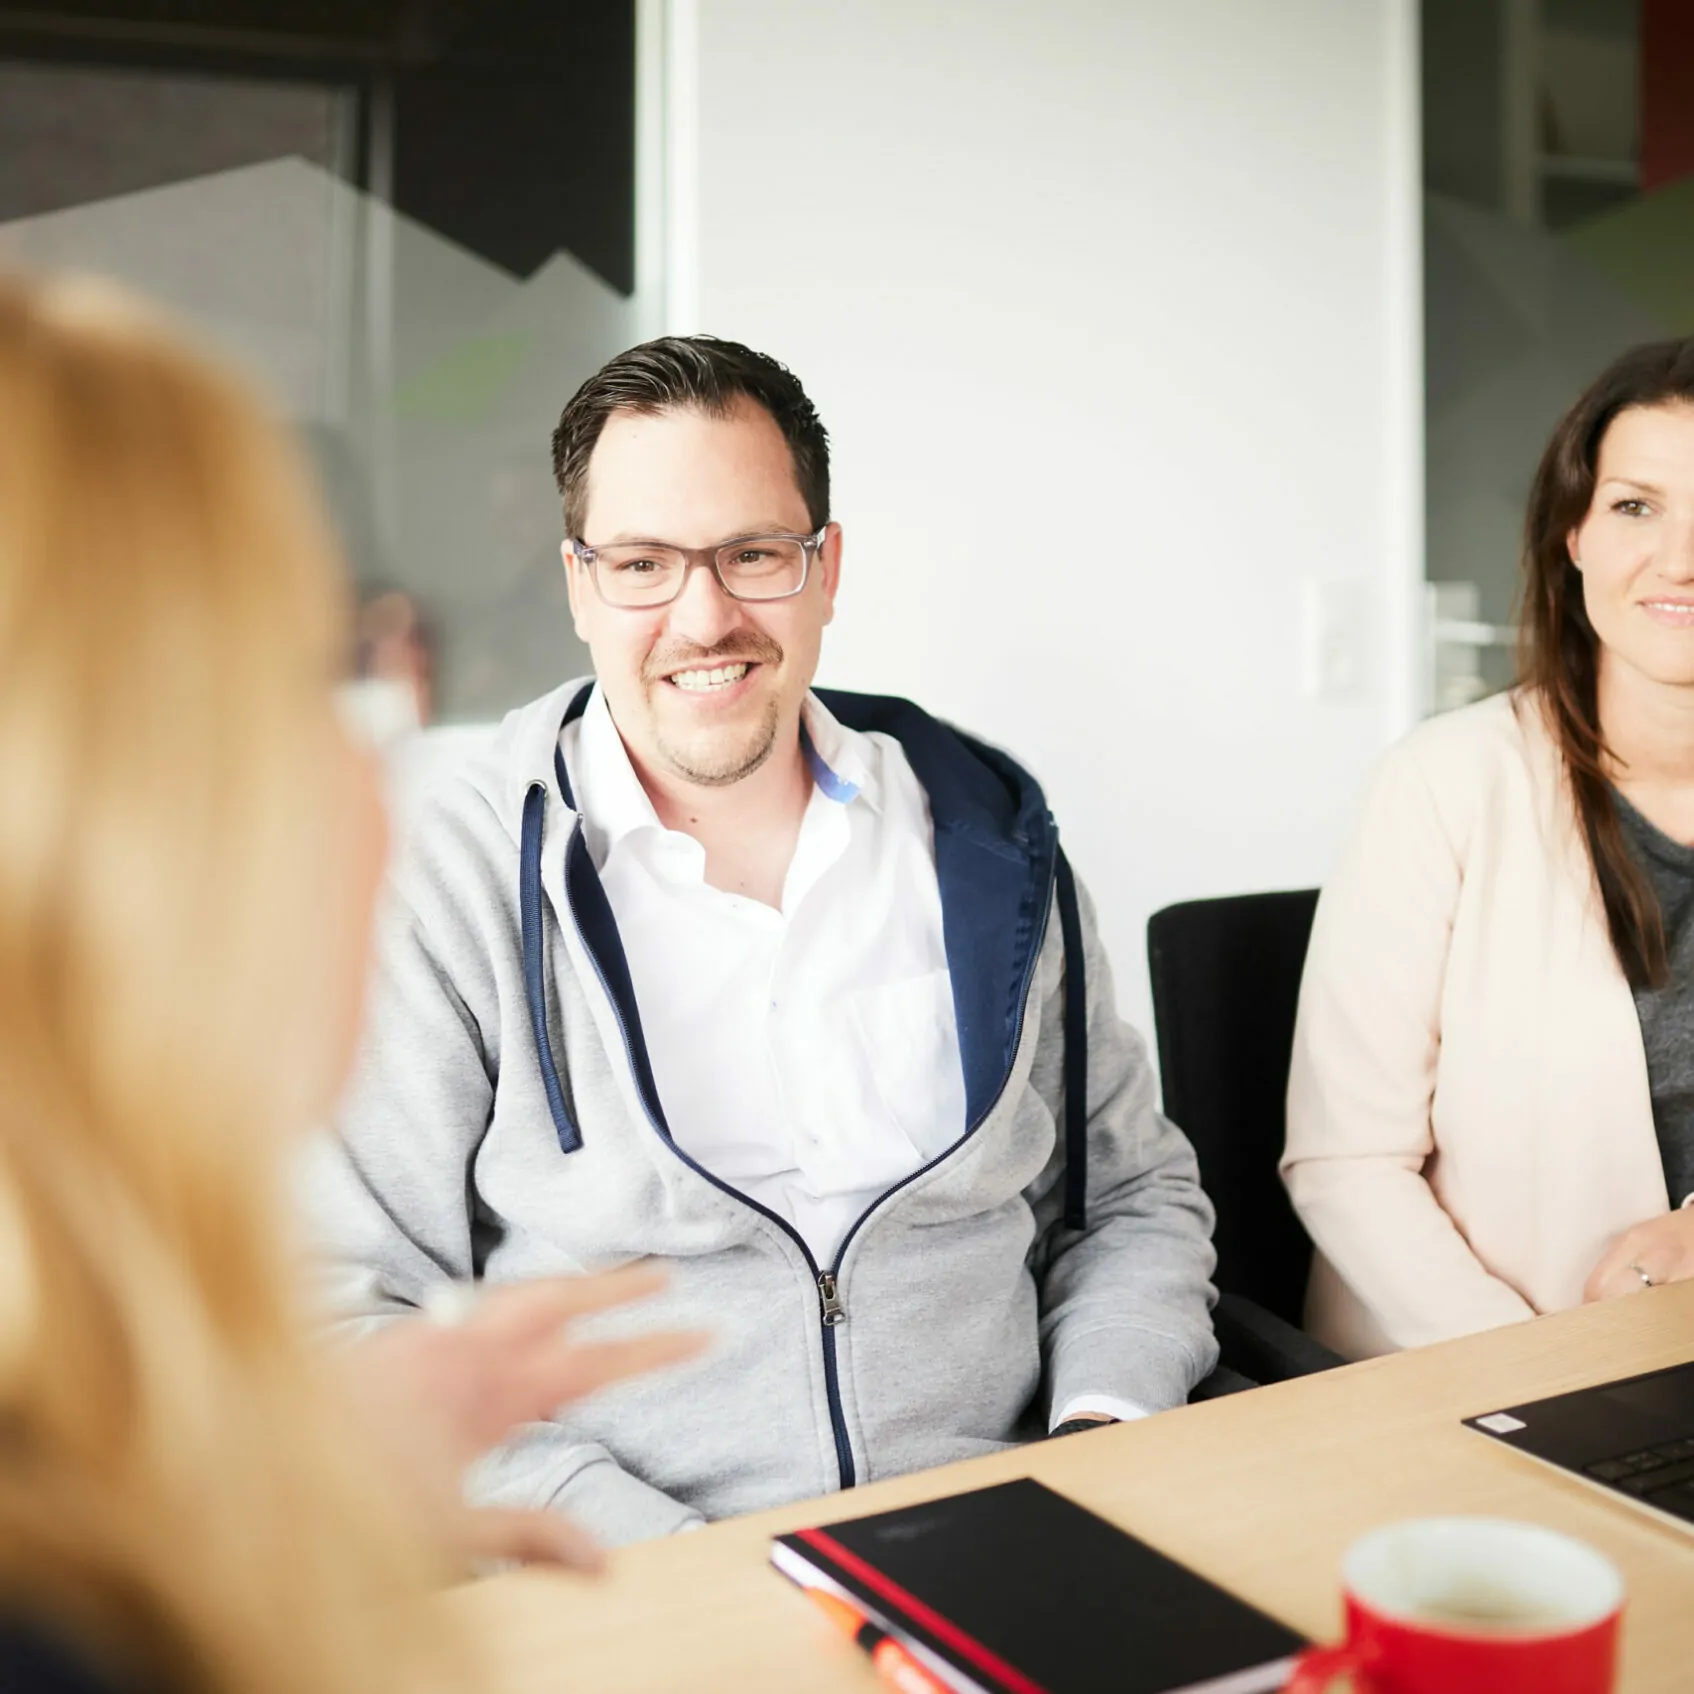 Foto von einem Mann und einer Frau, die an einem Konferenztisch sitzen und sich von einer Dame beraten lassen.